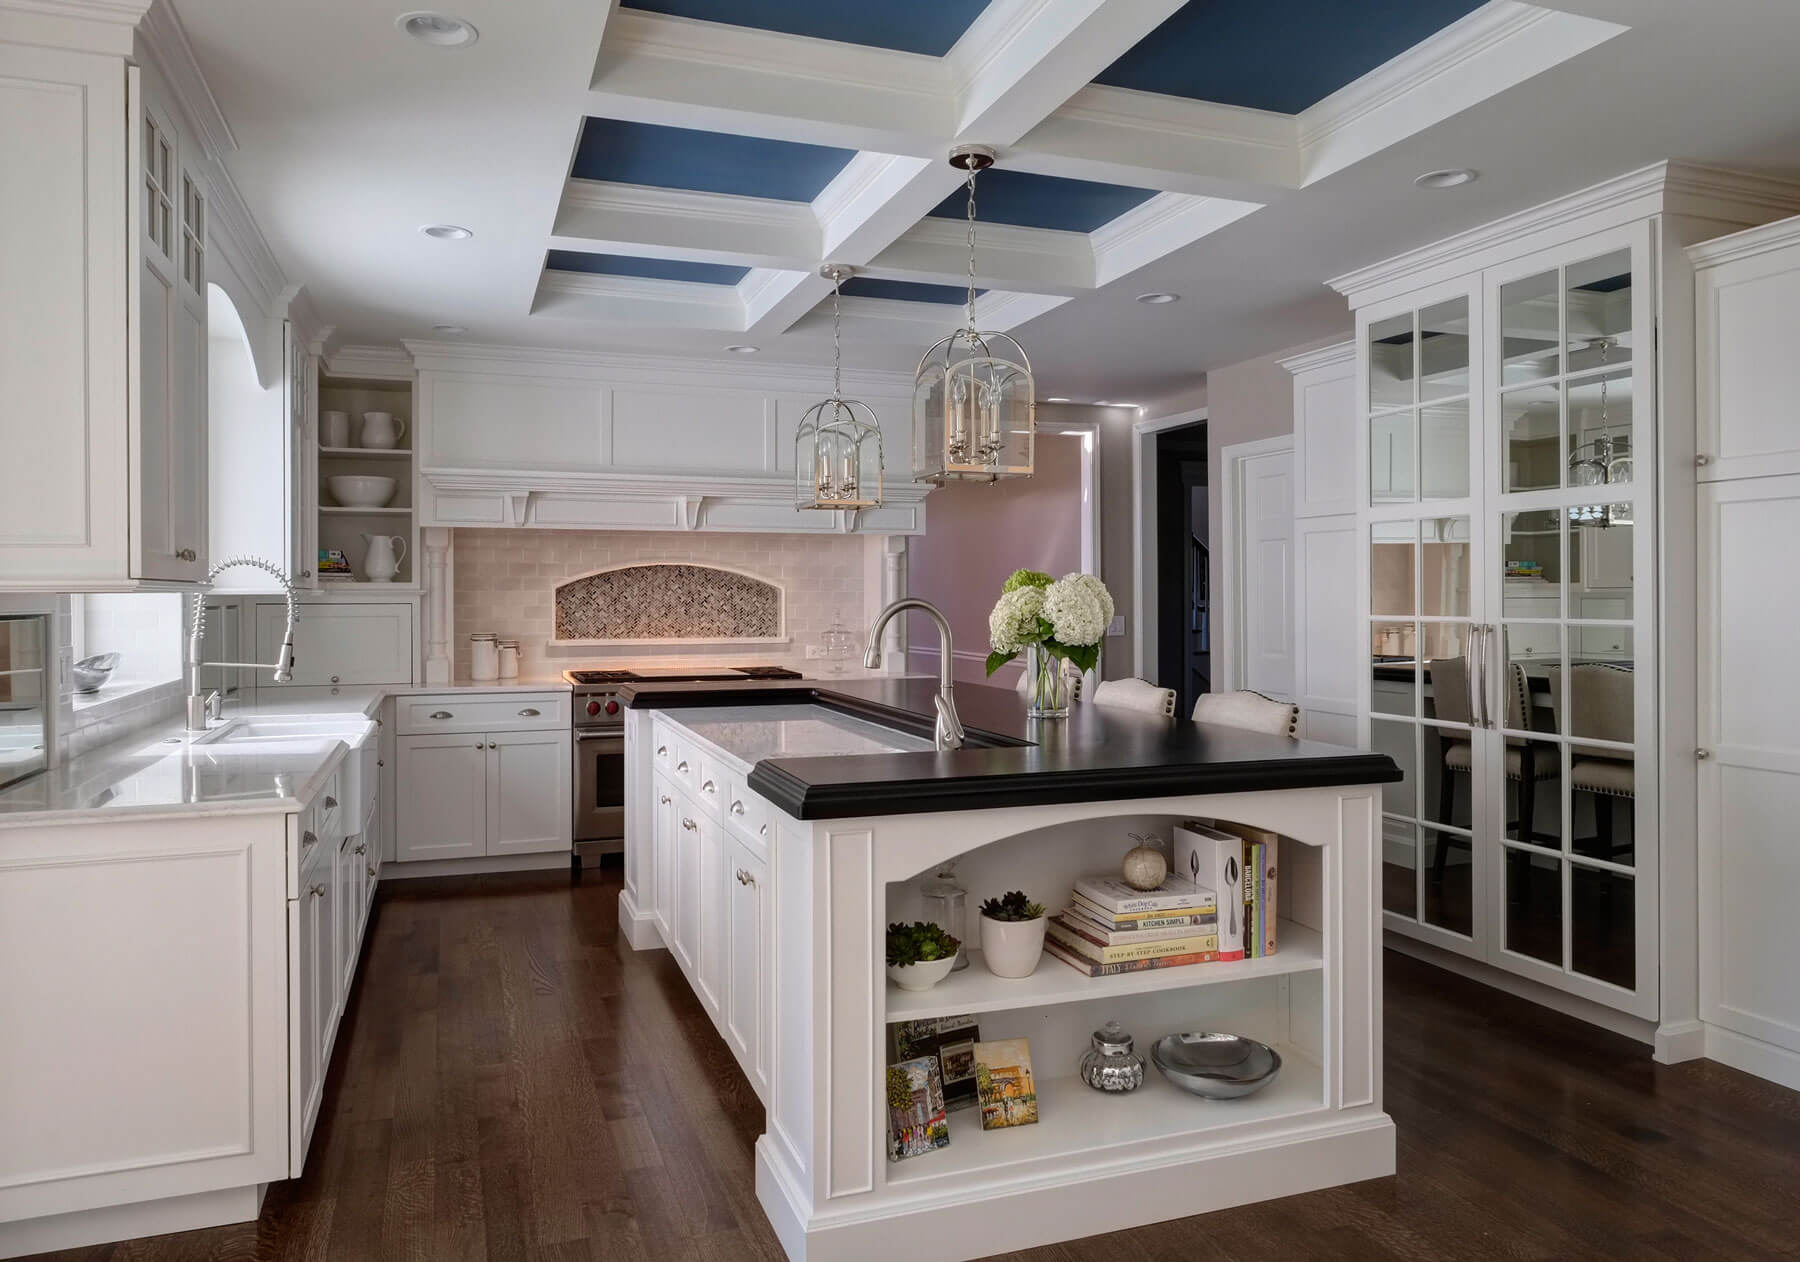 白色的厨房是一个巨大的黑色顶部的岛台，下面是蓝色镶板的天花板。镜面冰箱门横跨深色硬木地板，白色台面与岛台形成对比。